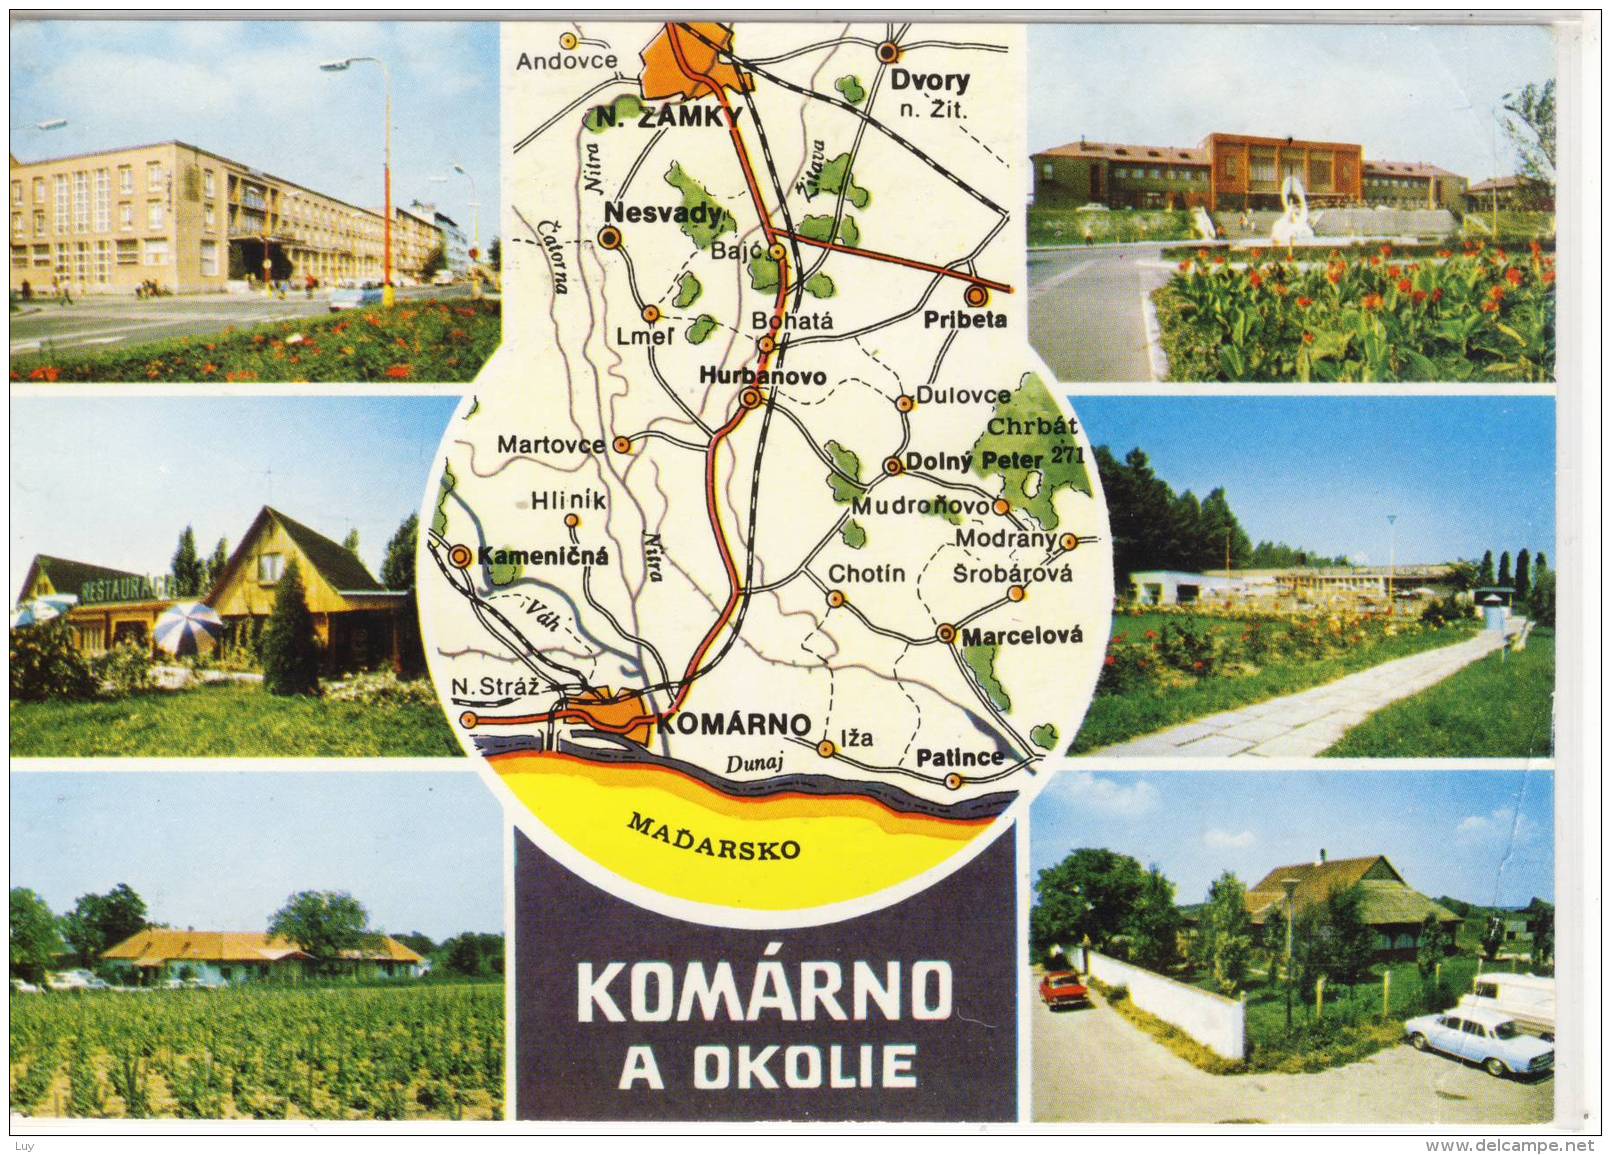 KOMÁRNO A Okolie - Hotel Európa, Nova Straz - Restauracia, Patince - Restauracia Thermal ..... - Slowakije